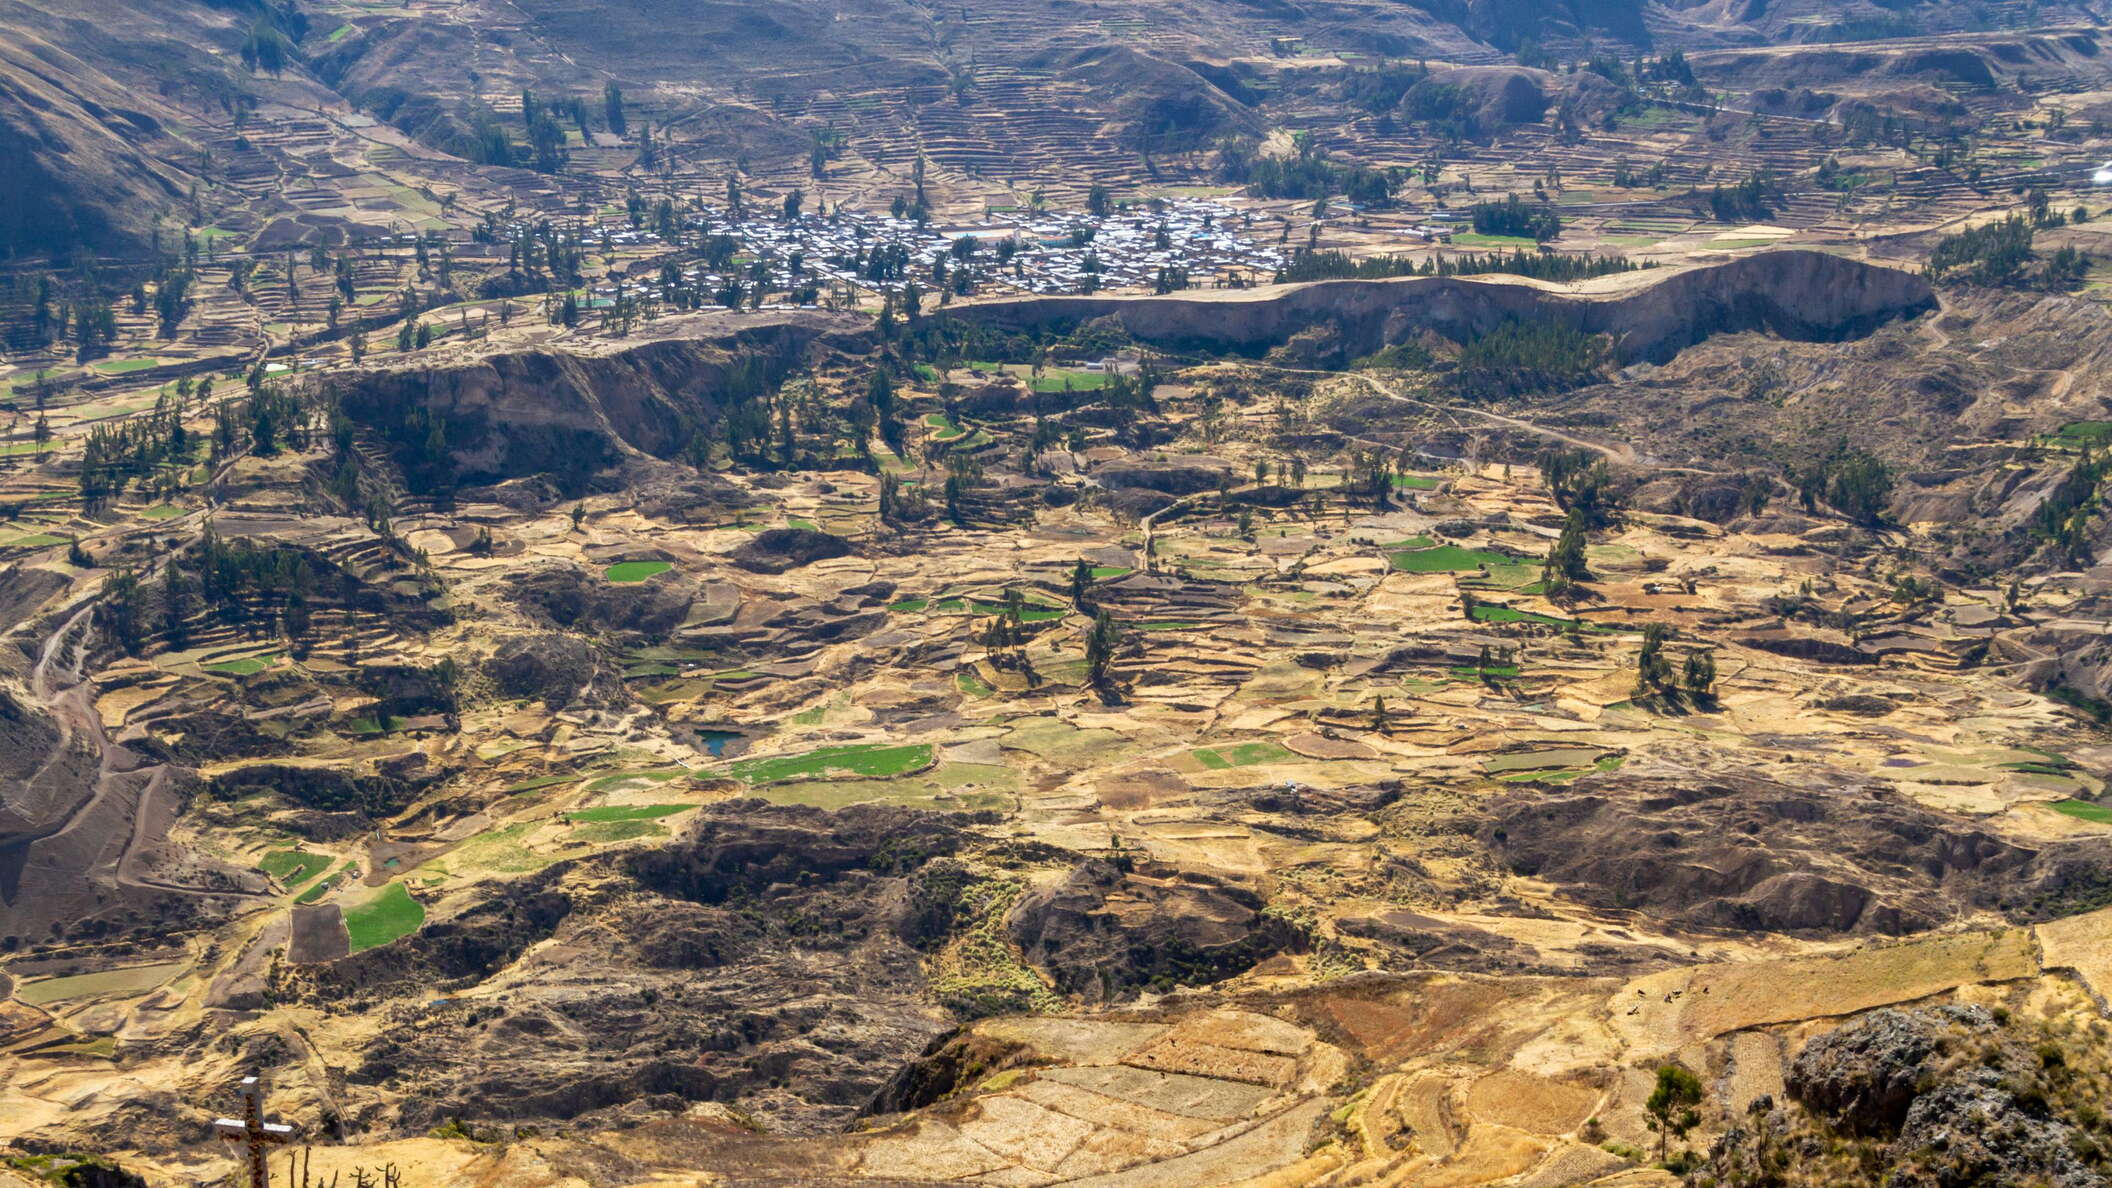 Valle del Colca | Landslide of Madrigal in 2018